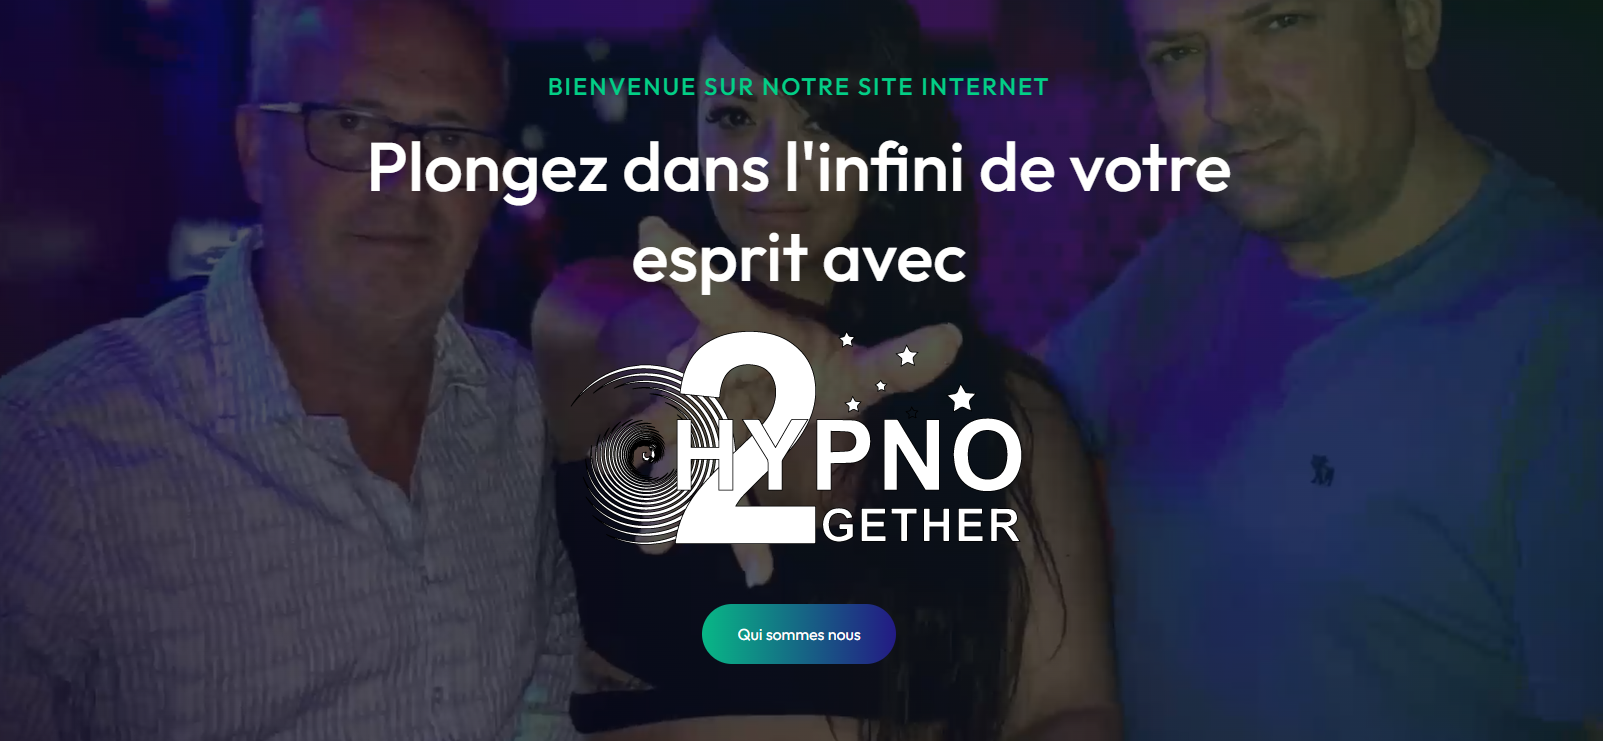 Hypno2gether.fr devient Hypno2gether.org : Une Nouvelle Aventure Digitale Débute